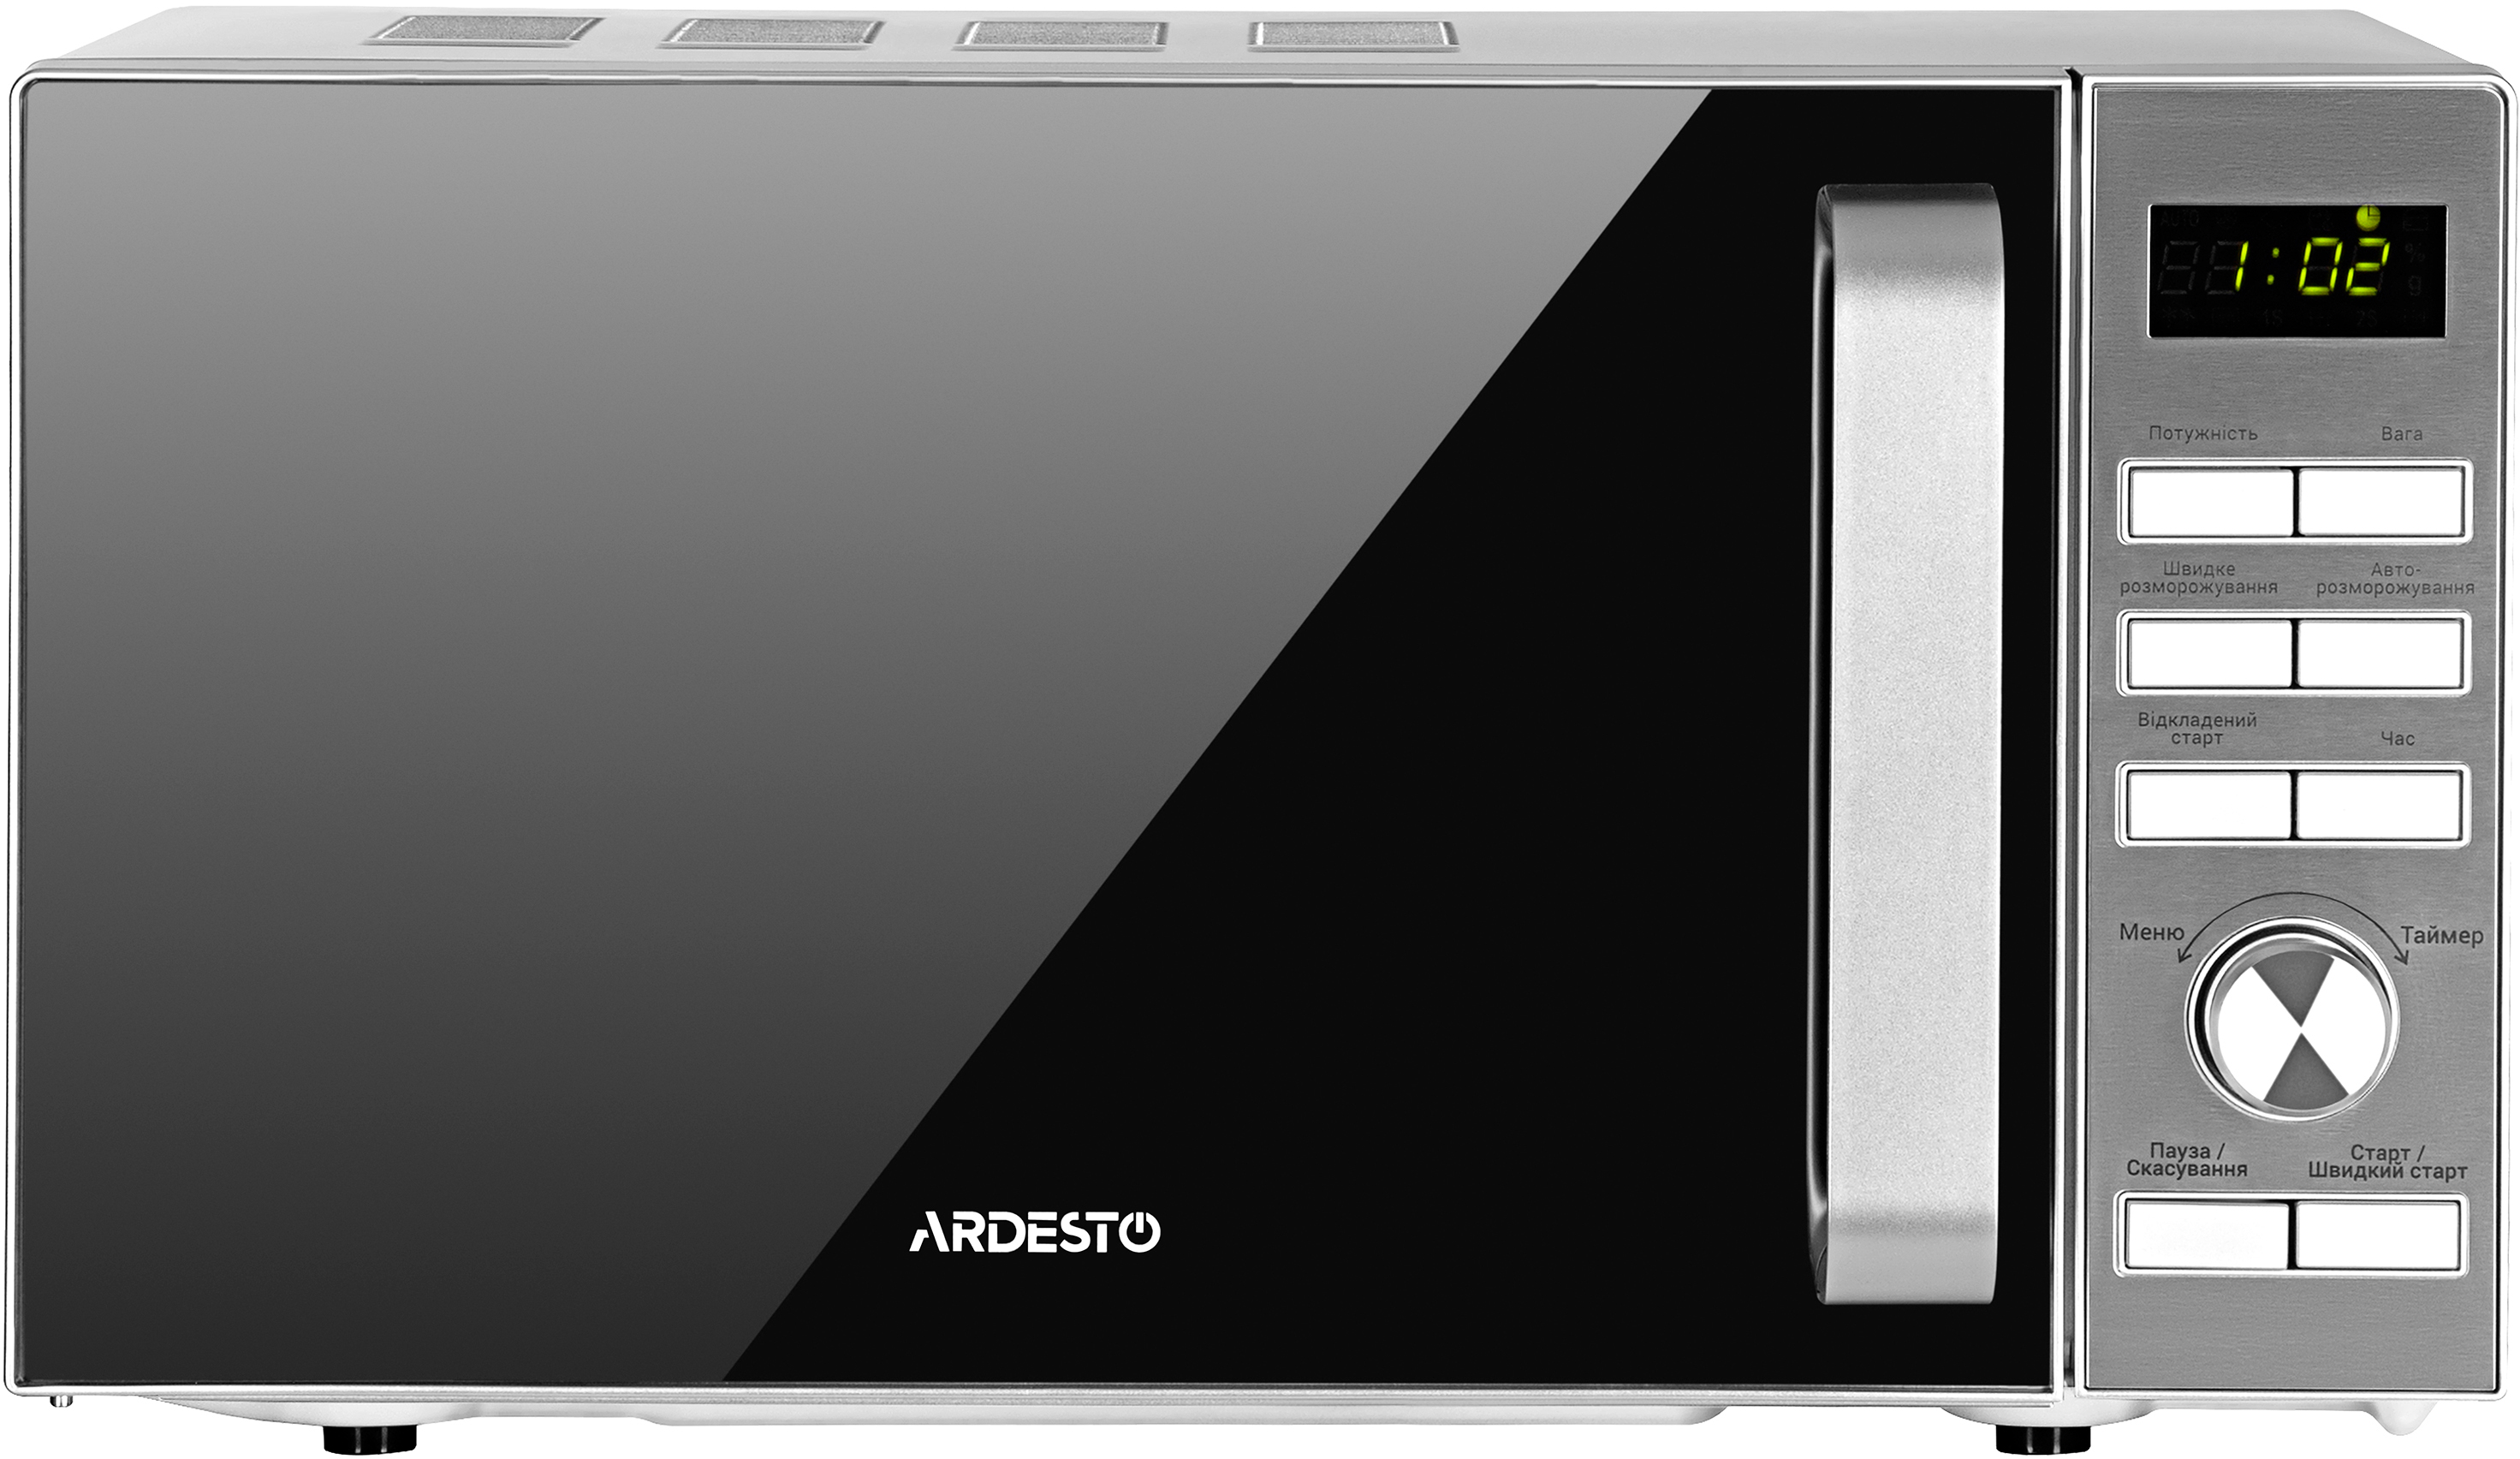 Микроволновая печь Ardesto GO-E735S цена 3099.00 грн - фотография 2